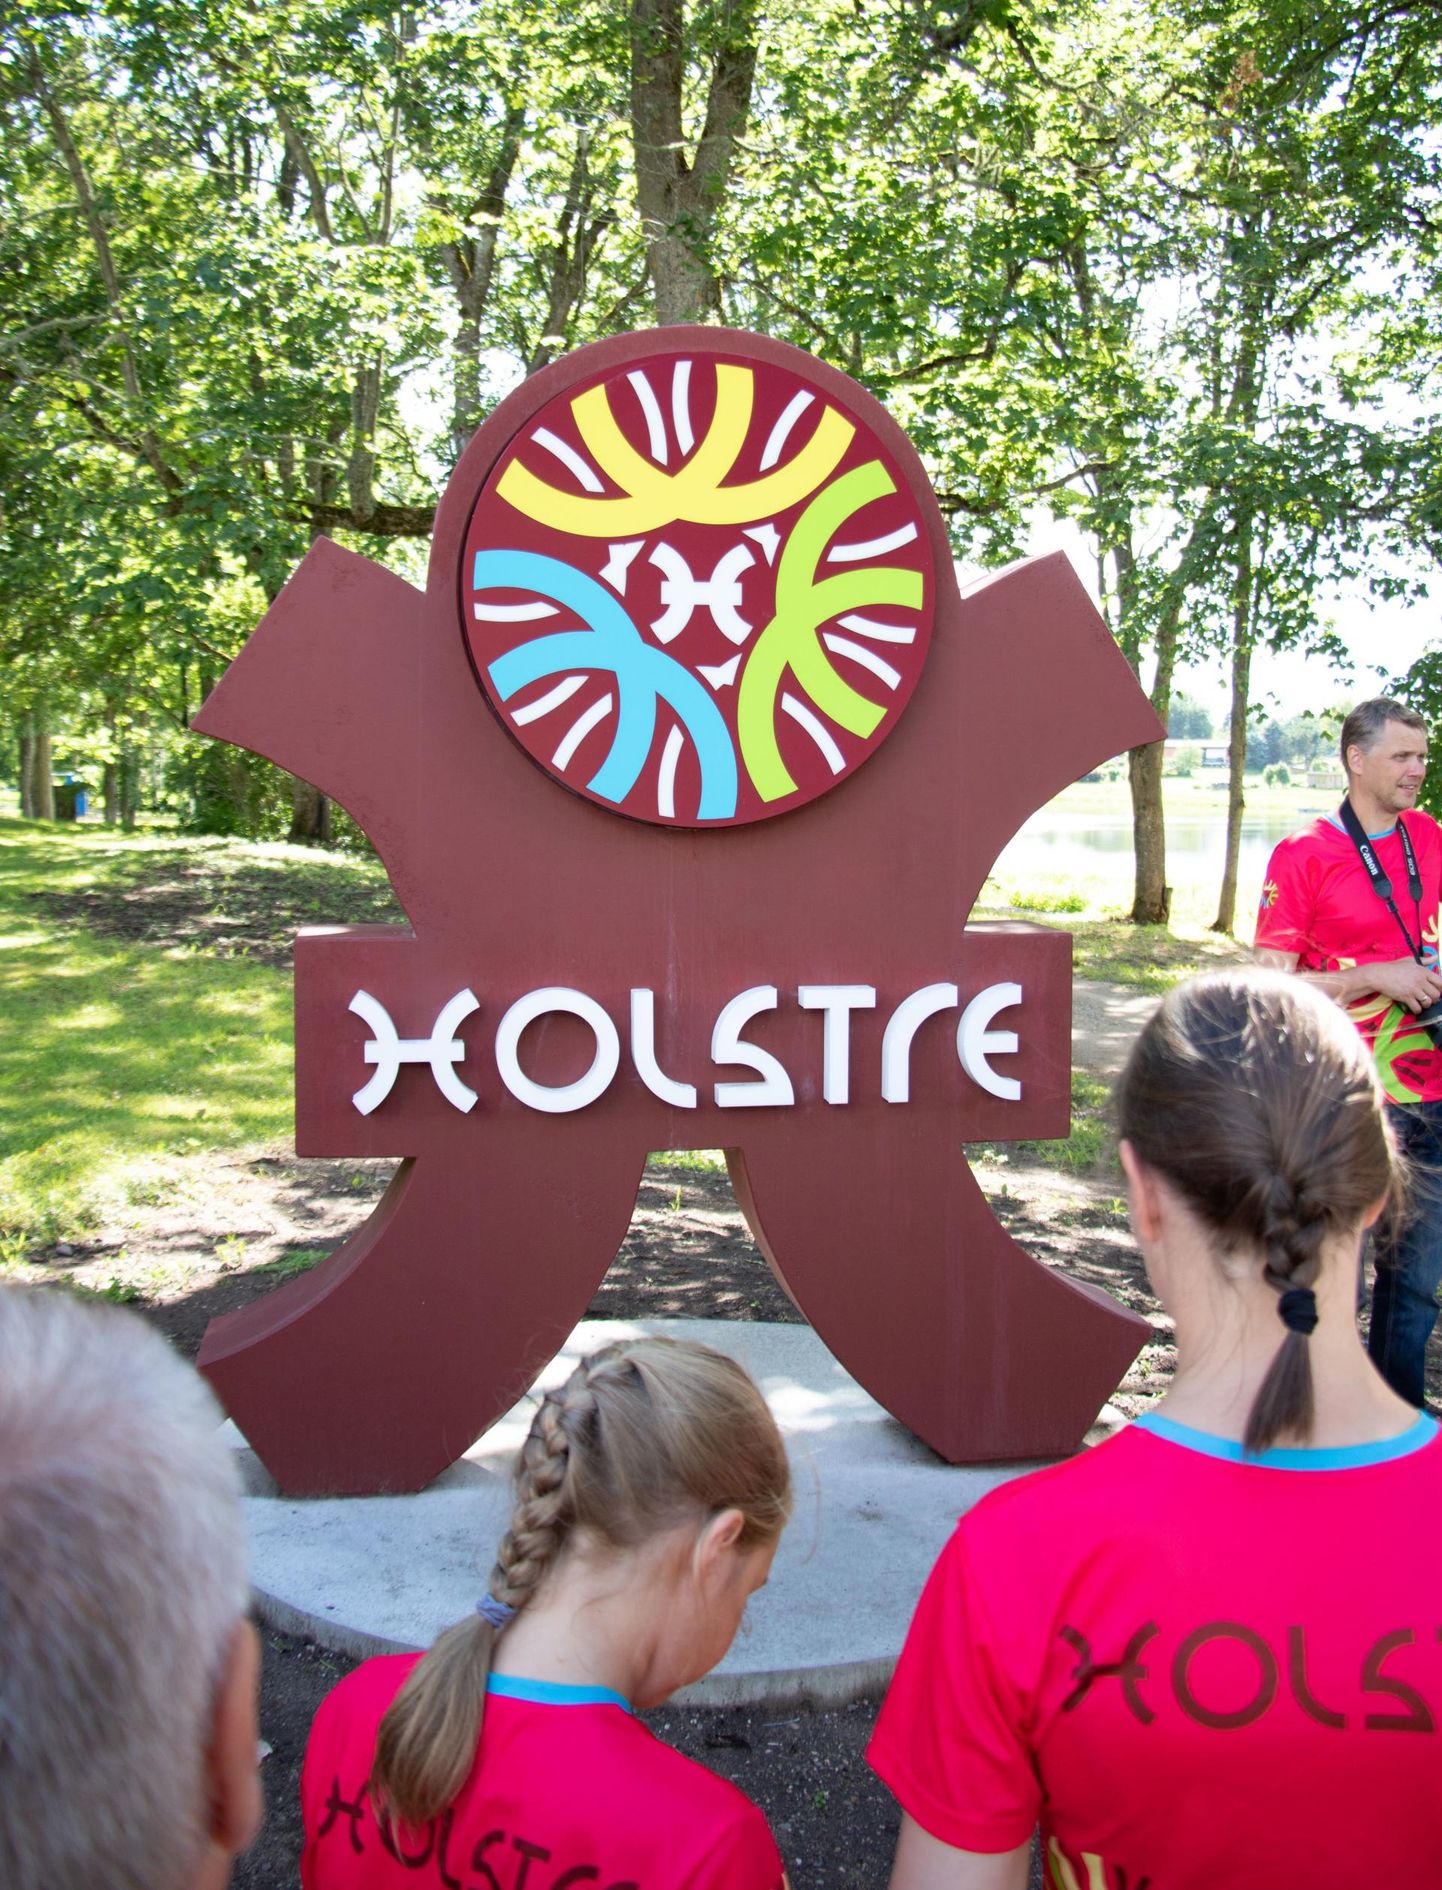 Keskkonnainvesteeringute keskuse abiraha toel saab Holstre küla endale uued vee- ja kanalisatsioonitorud.